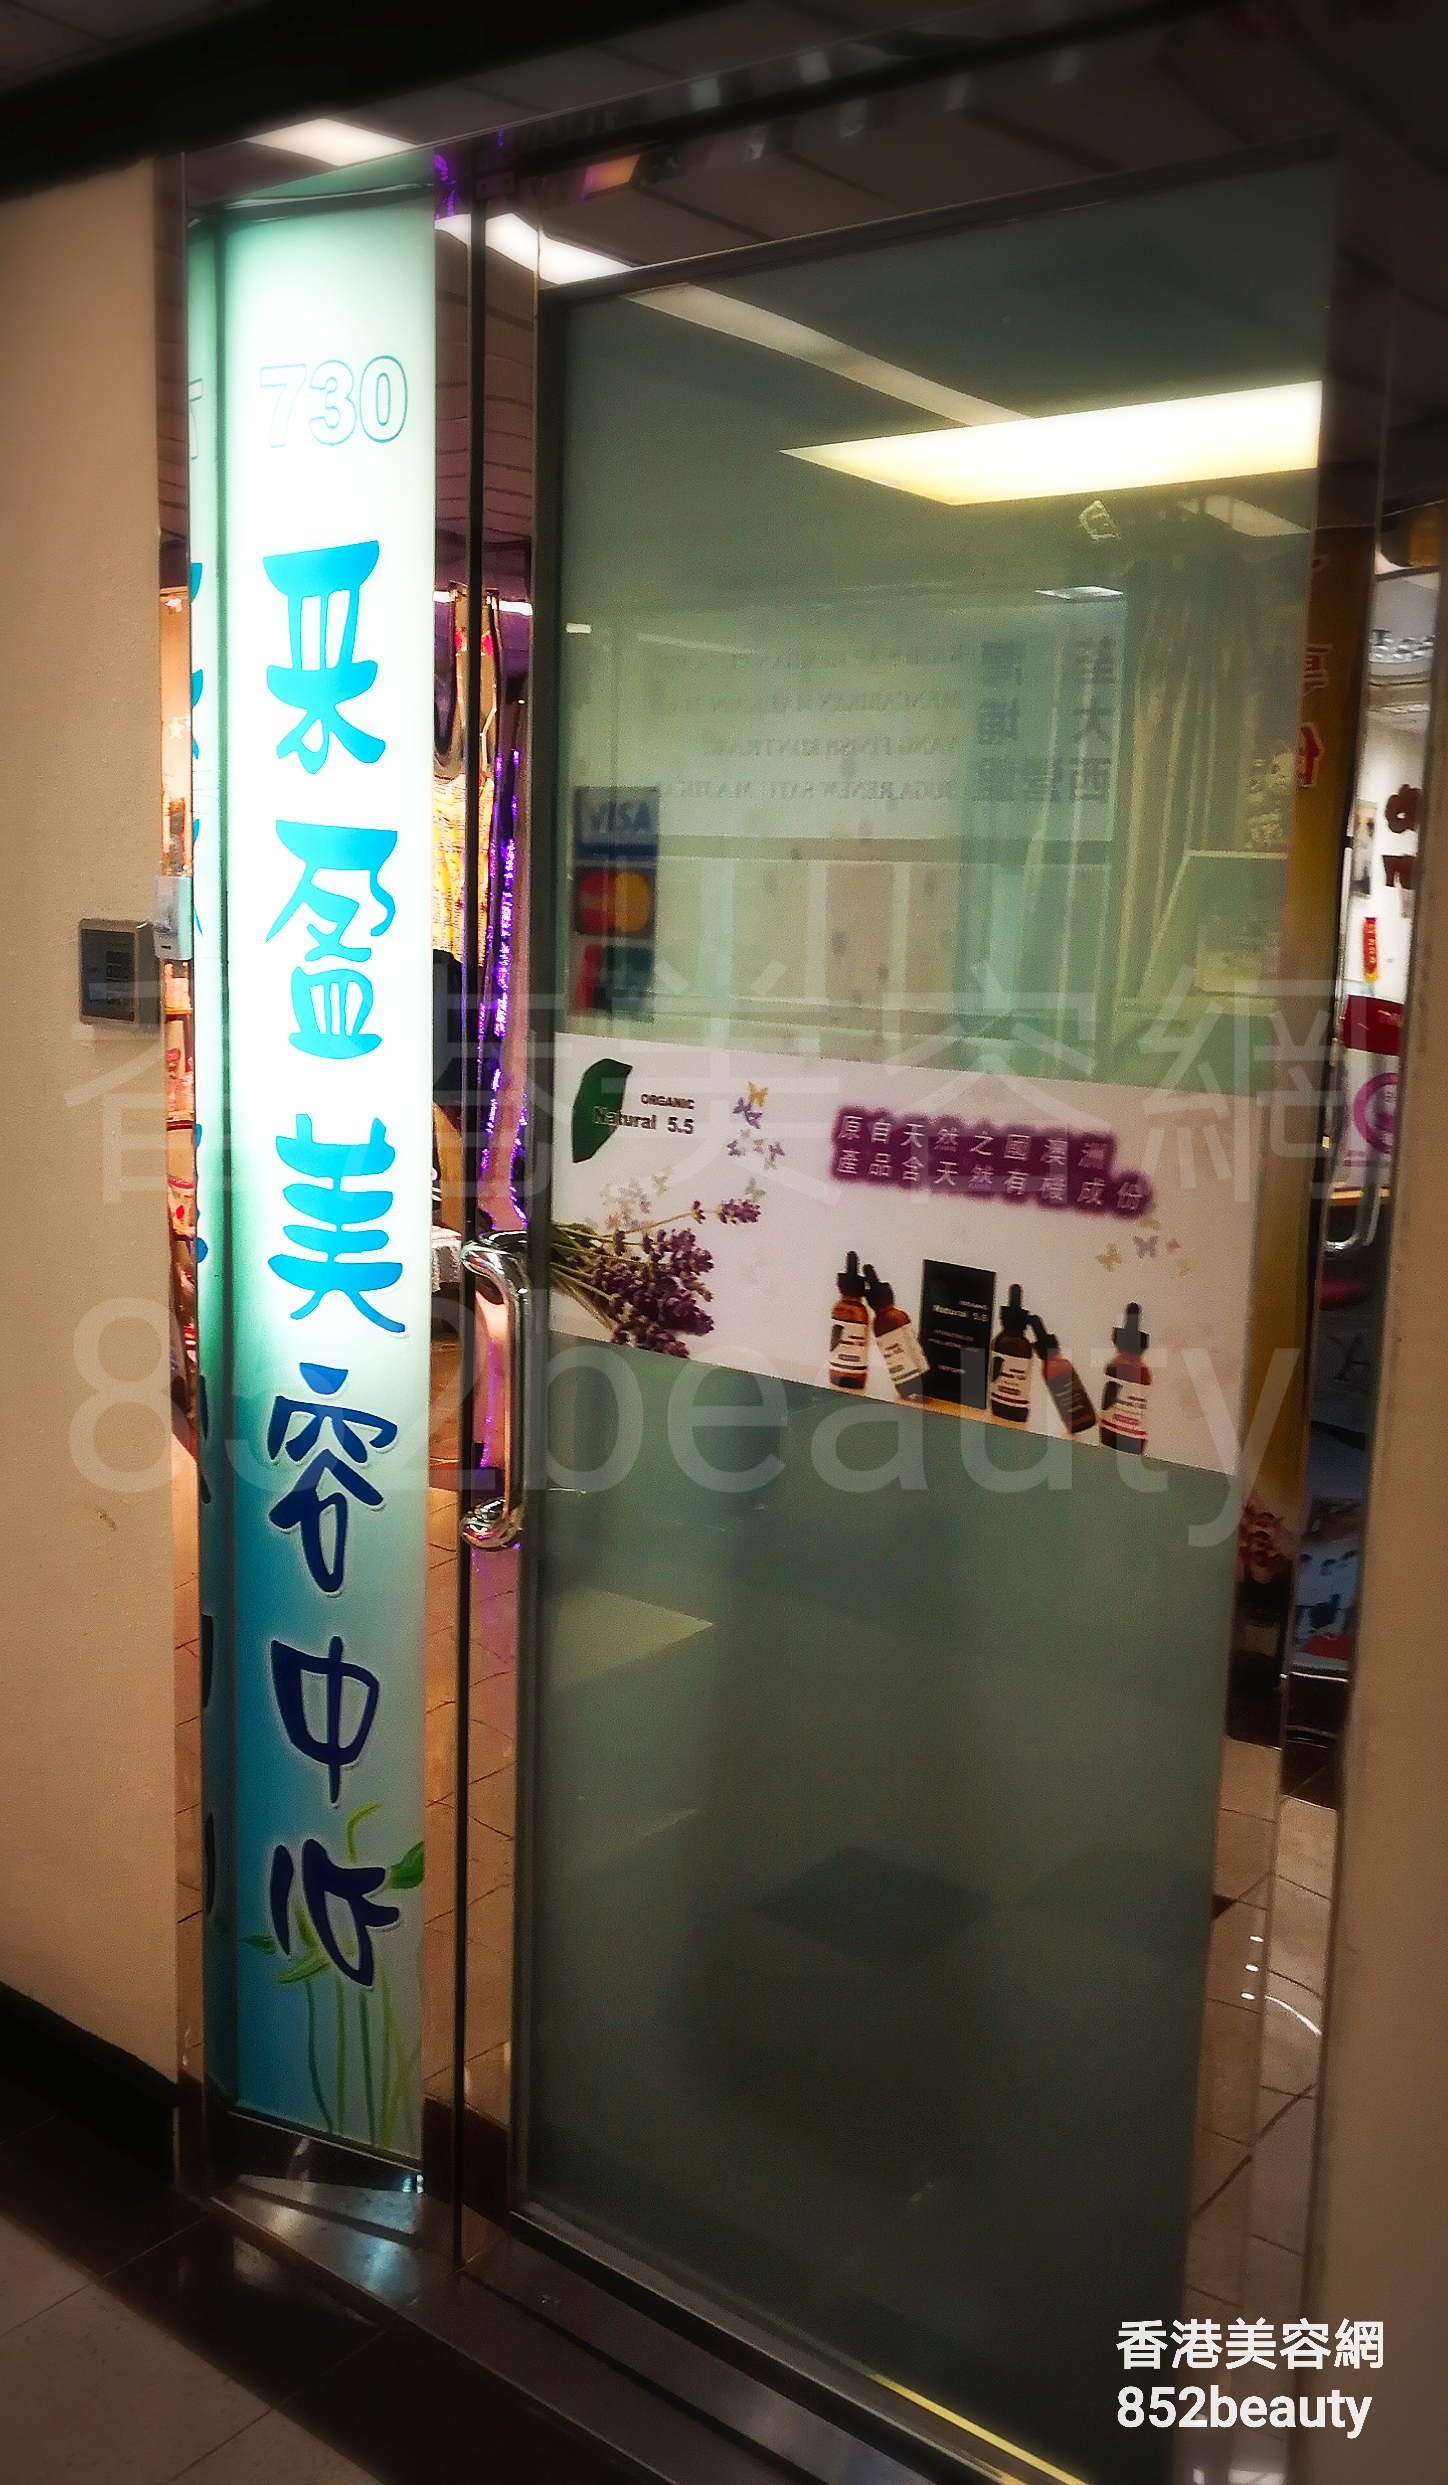 香港美容網 Hong Kong Beauty Salon 美容院 / 美容師: 采盈美容中心